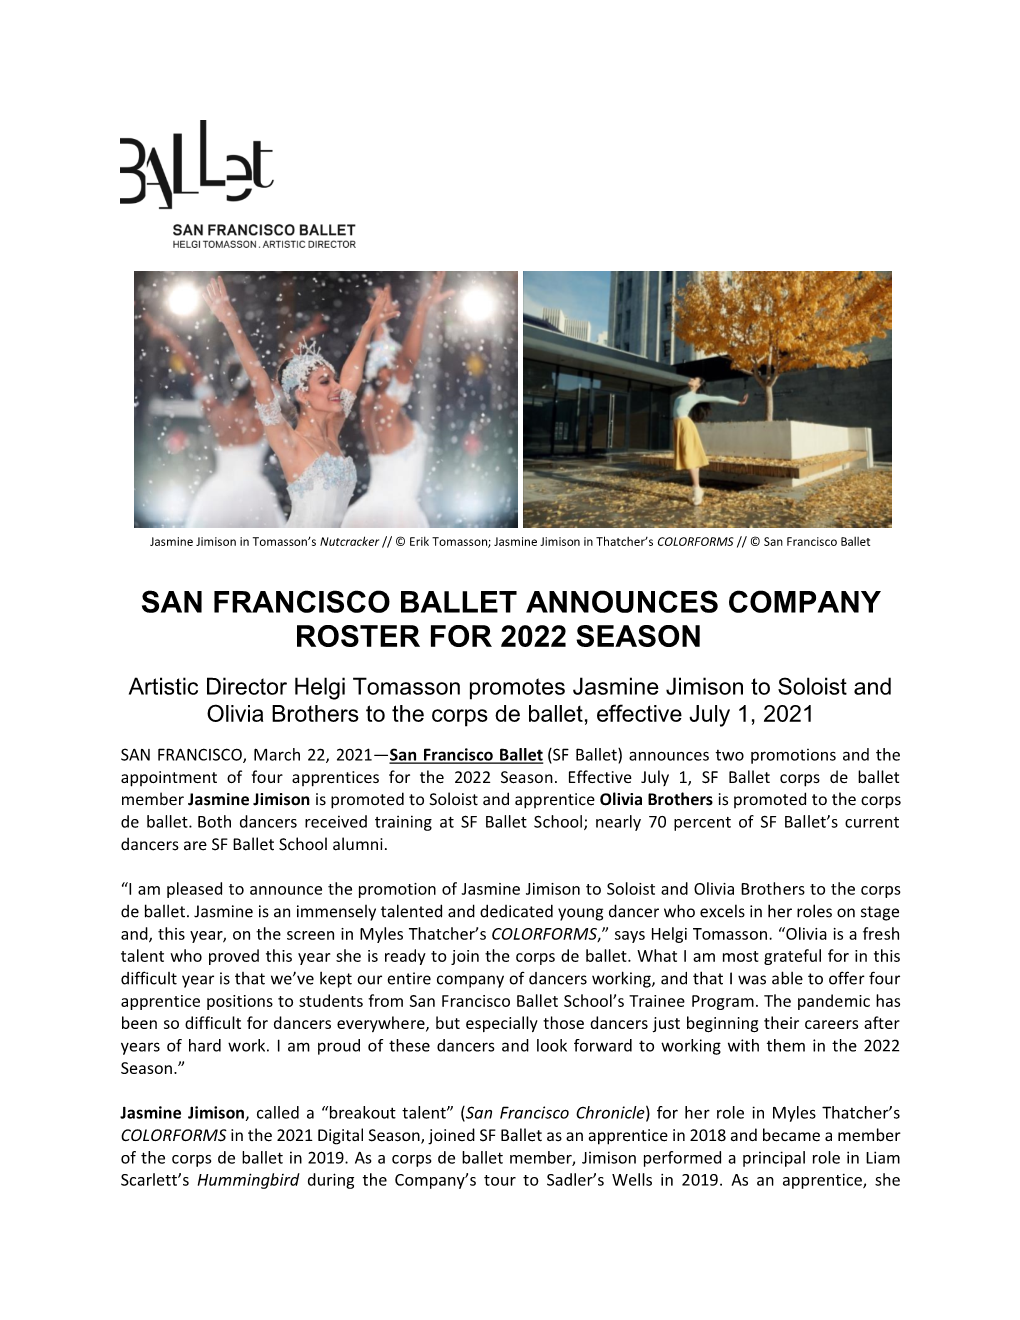 SF Ballet Announces 2022 Season Roster